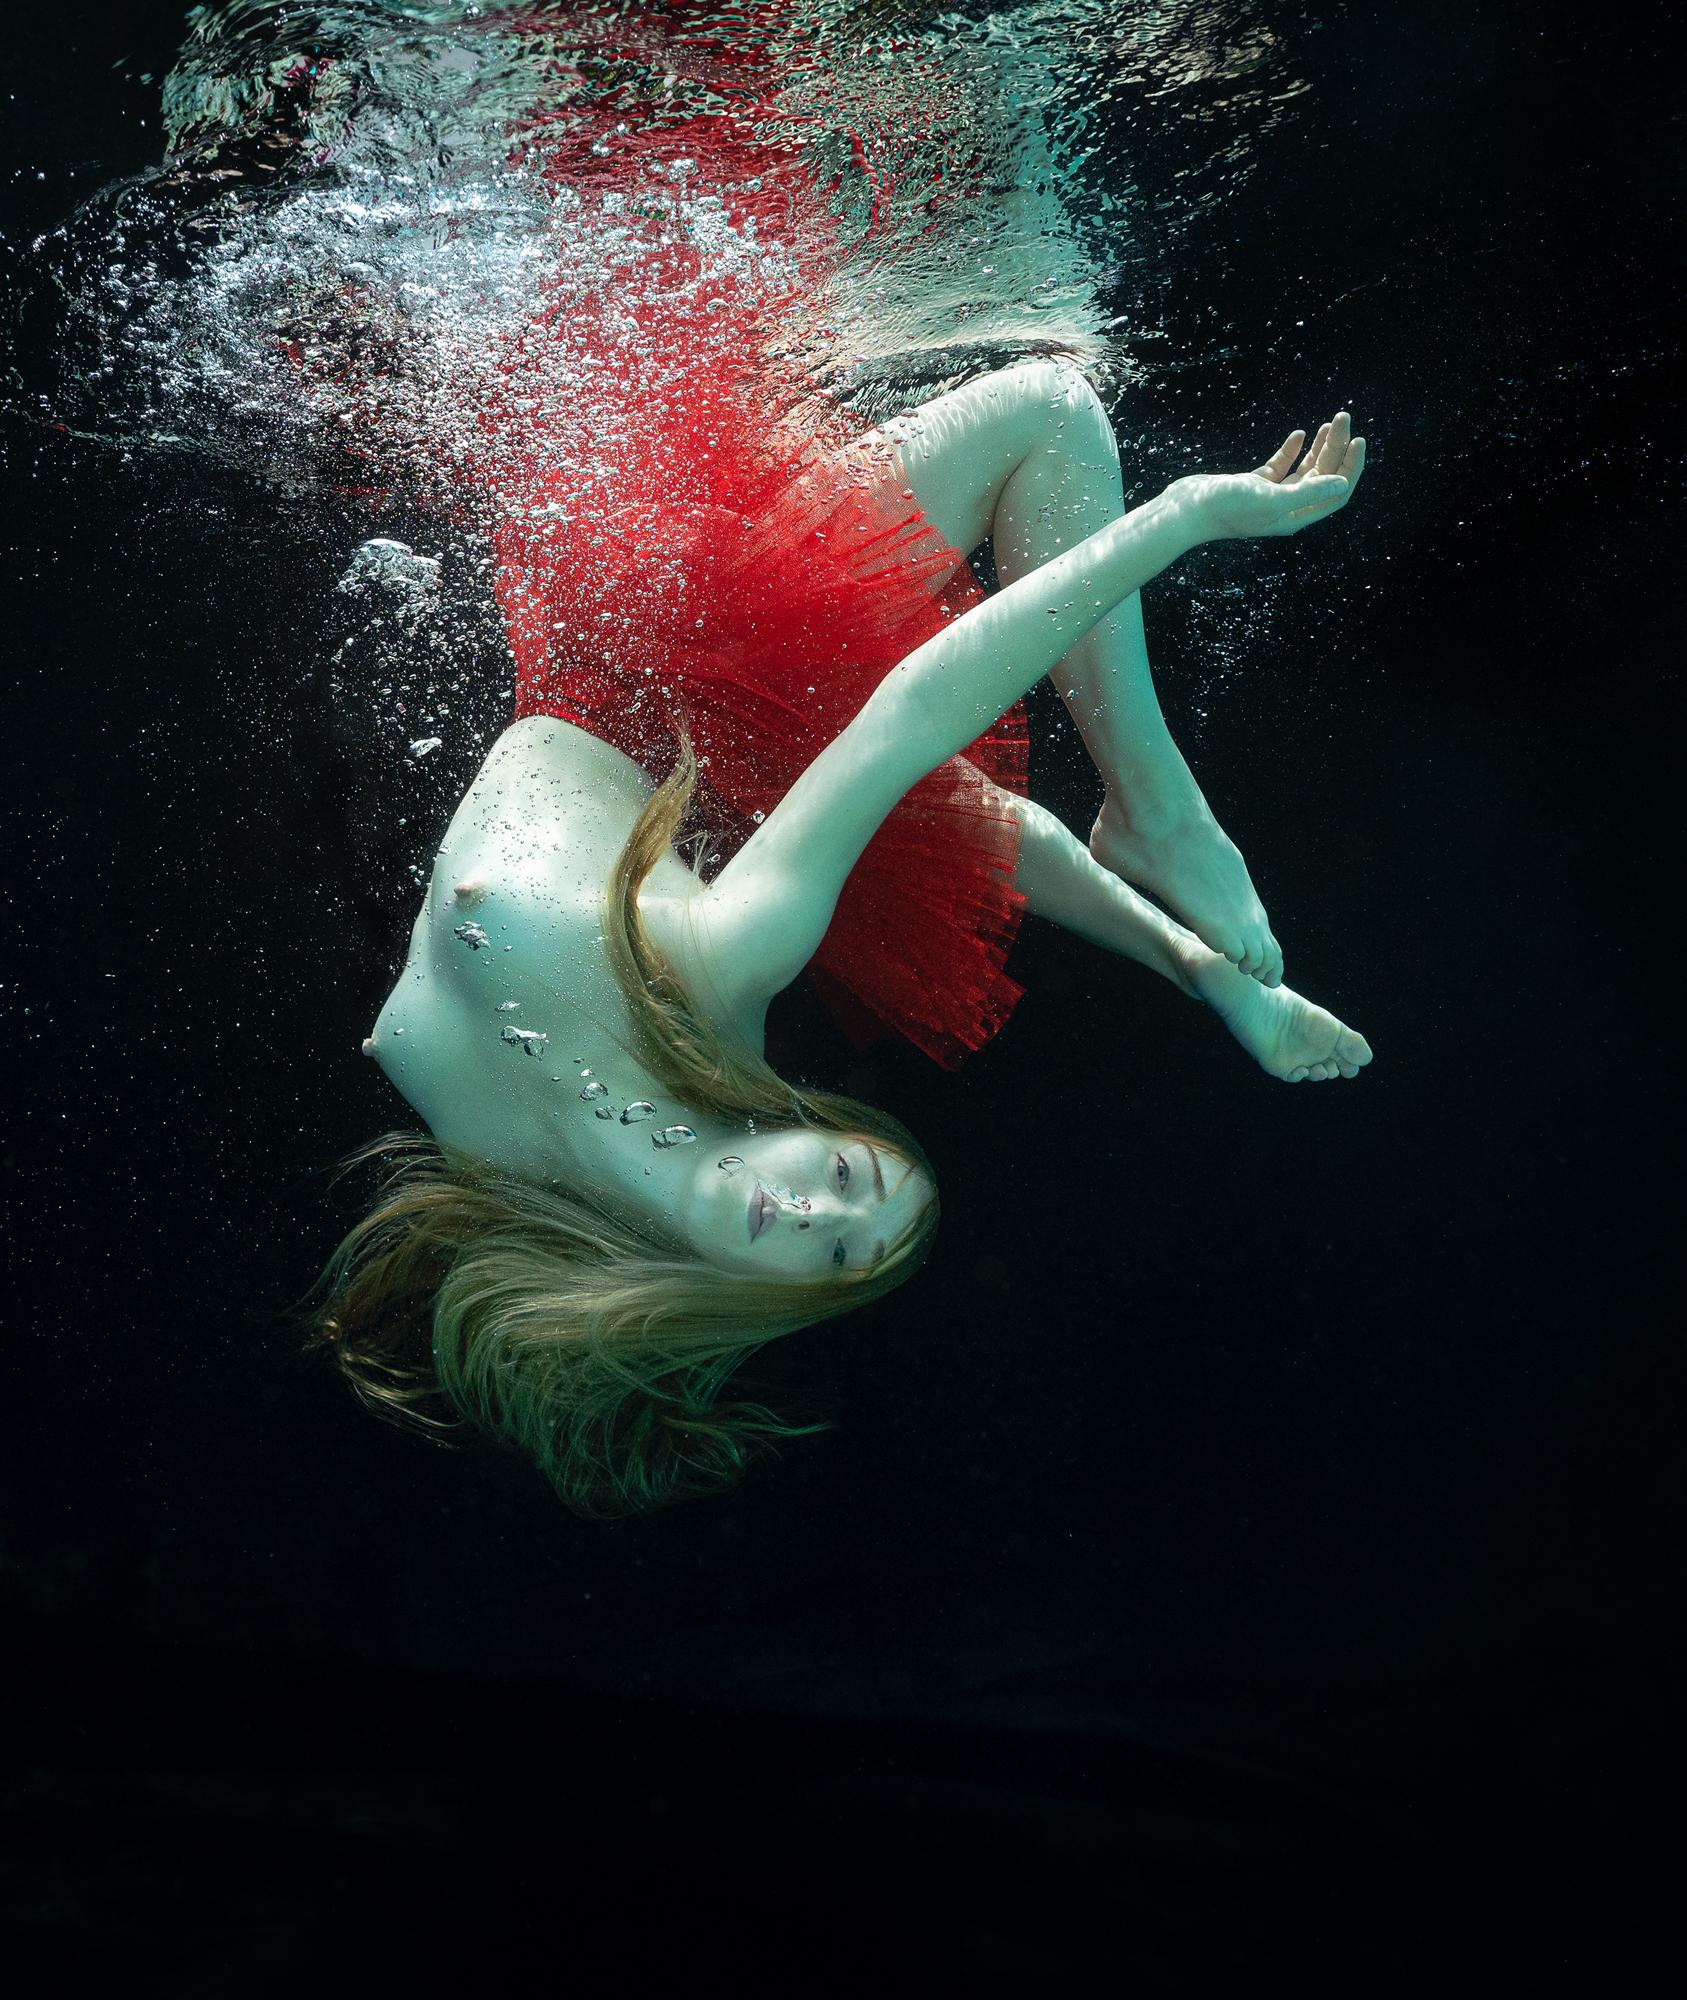 Figurative Photograph Alex Sher - Pretzel - photographie de nu sous-marine rouge - impression pigmentaire d'archives